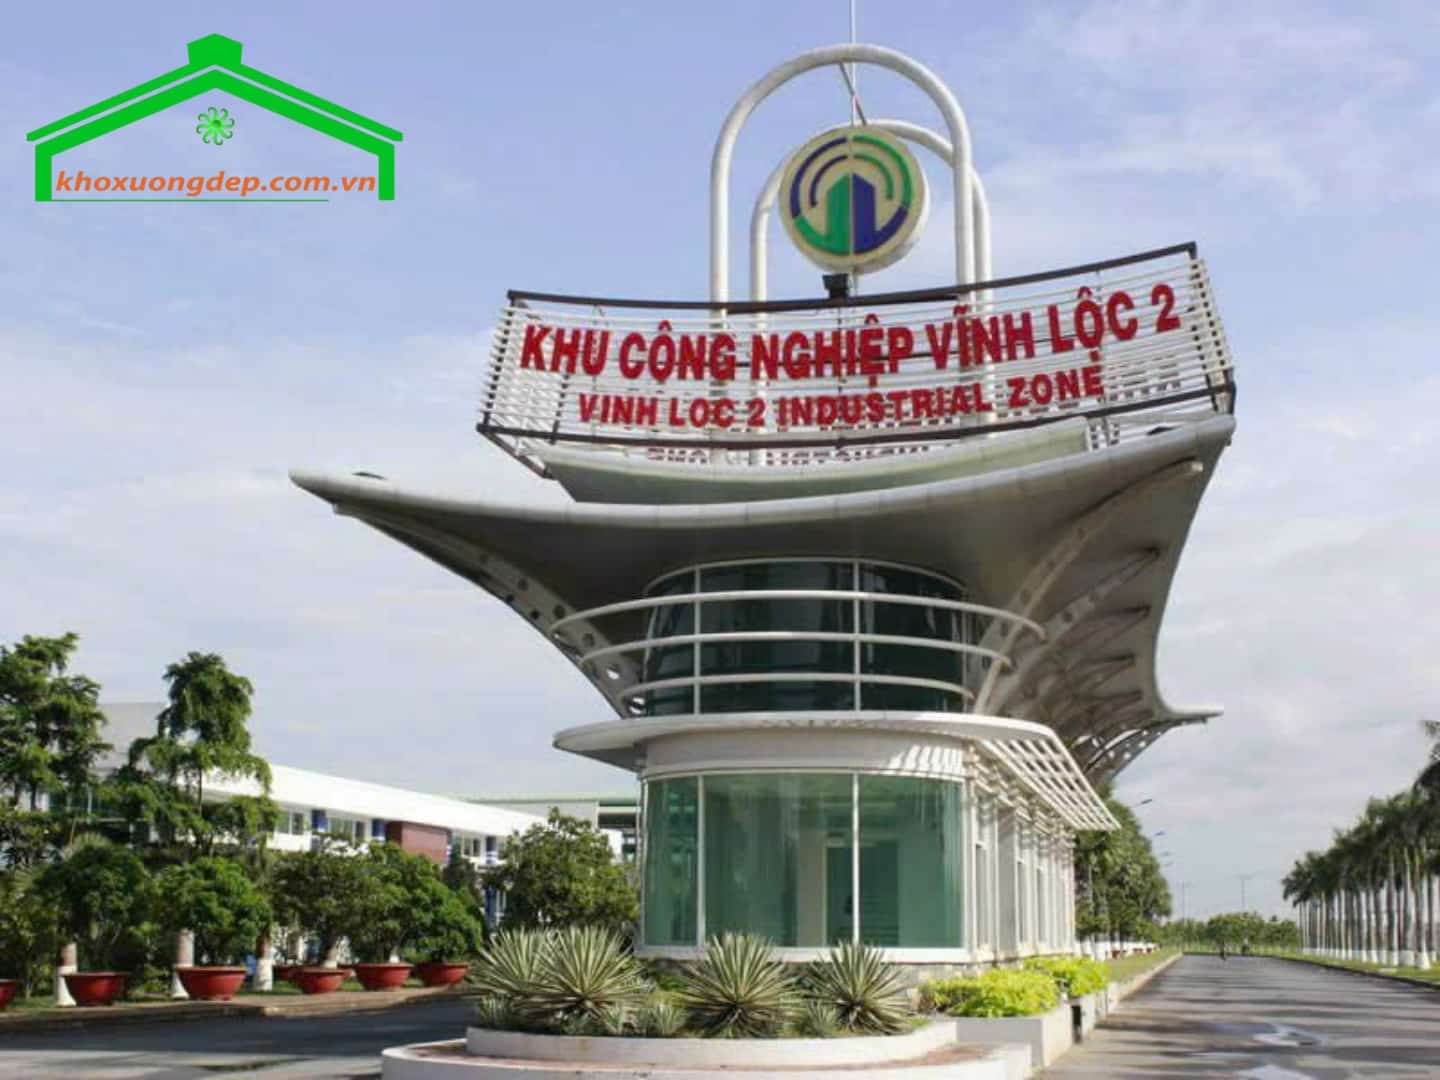 Ban quản lý KCN Vĩnh Lộc 2 – Liên hệ thuê mua đất, kho xưởng